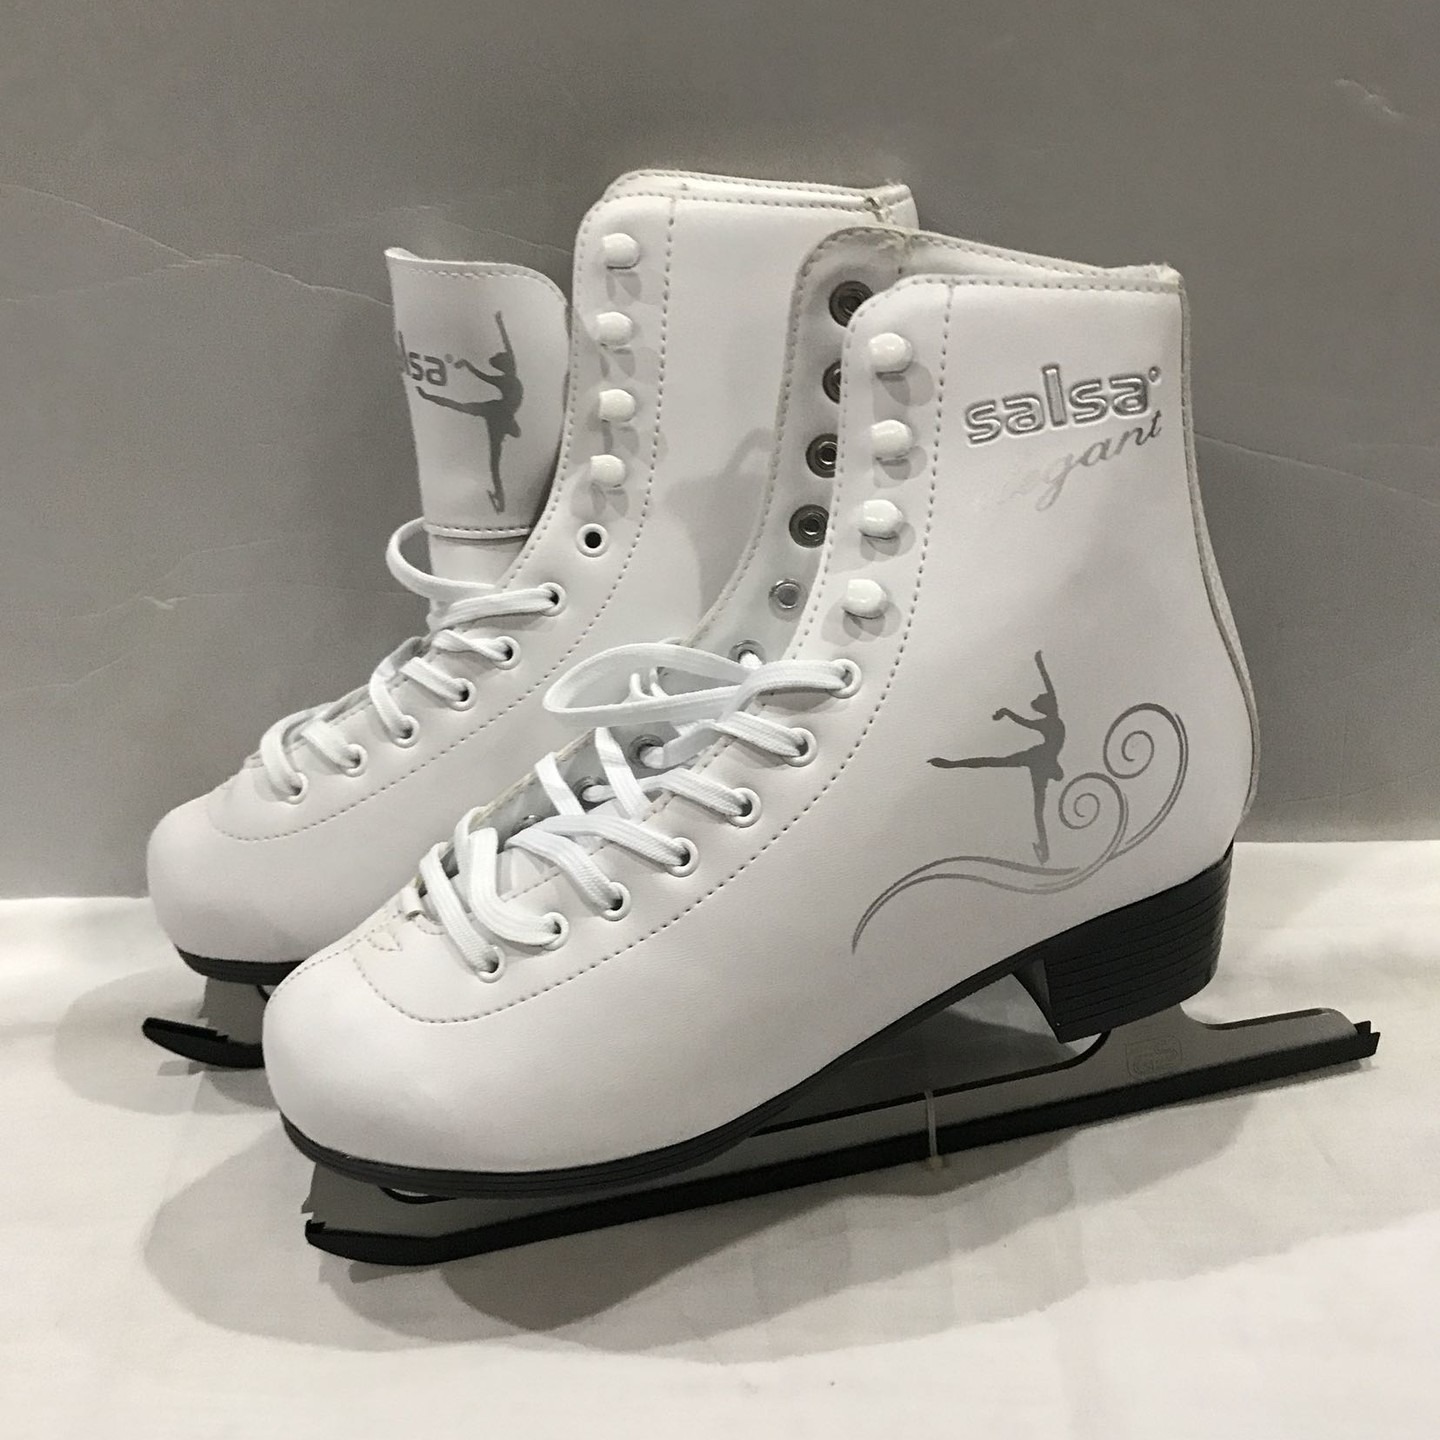 旭兴XX-01滑冰刀 溜冰鞋   成人儿童冰刀鞋   溜冰鞋  花样滑冰鞋图片